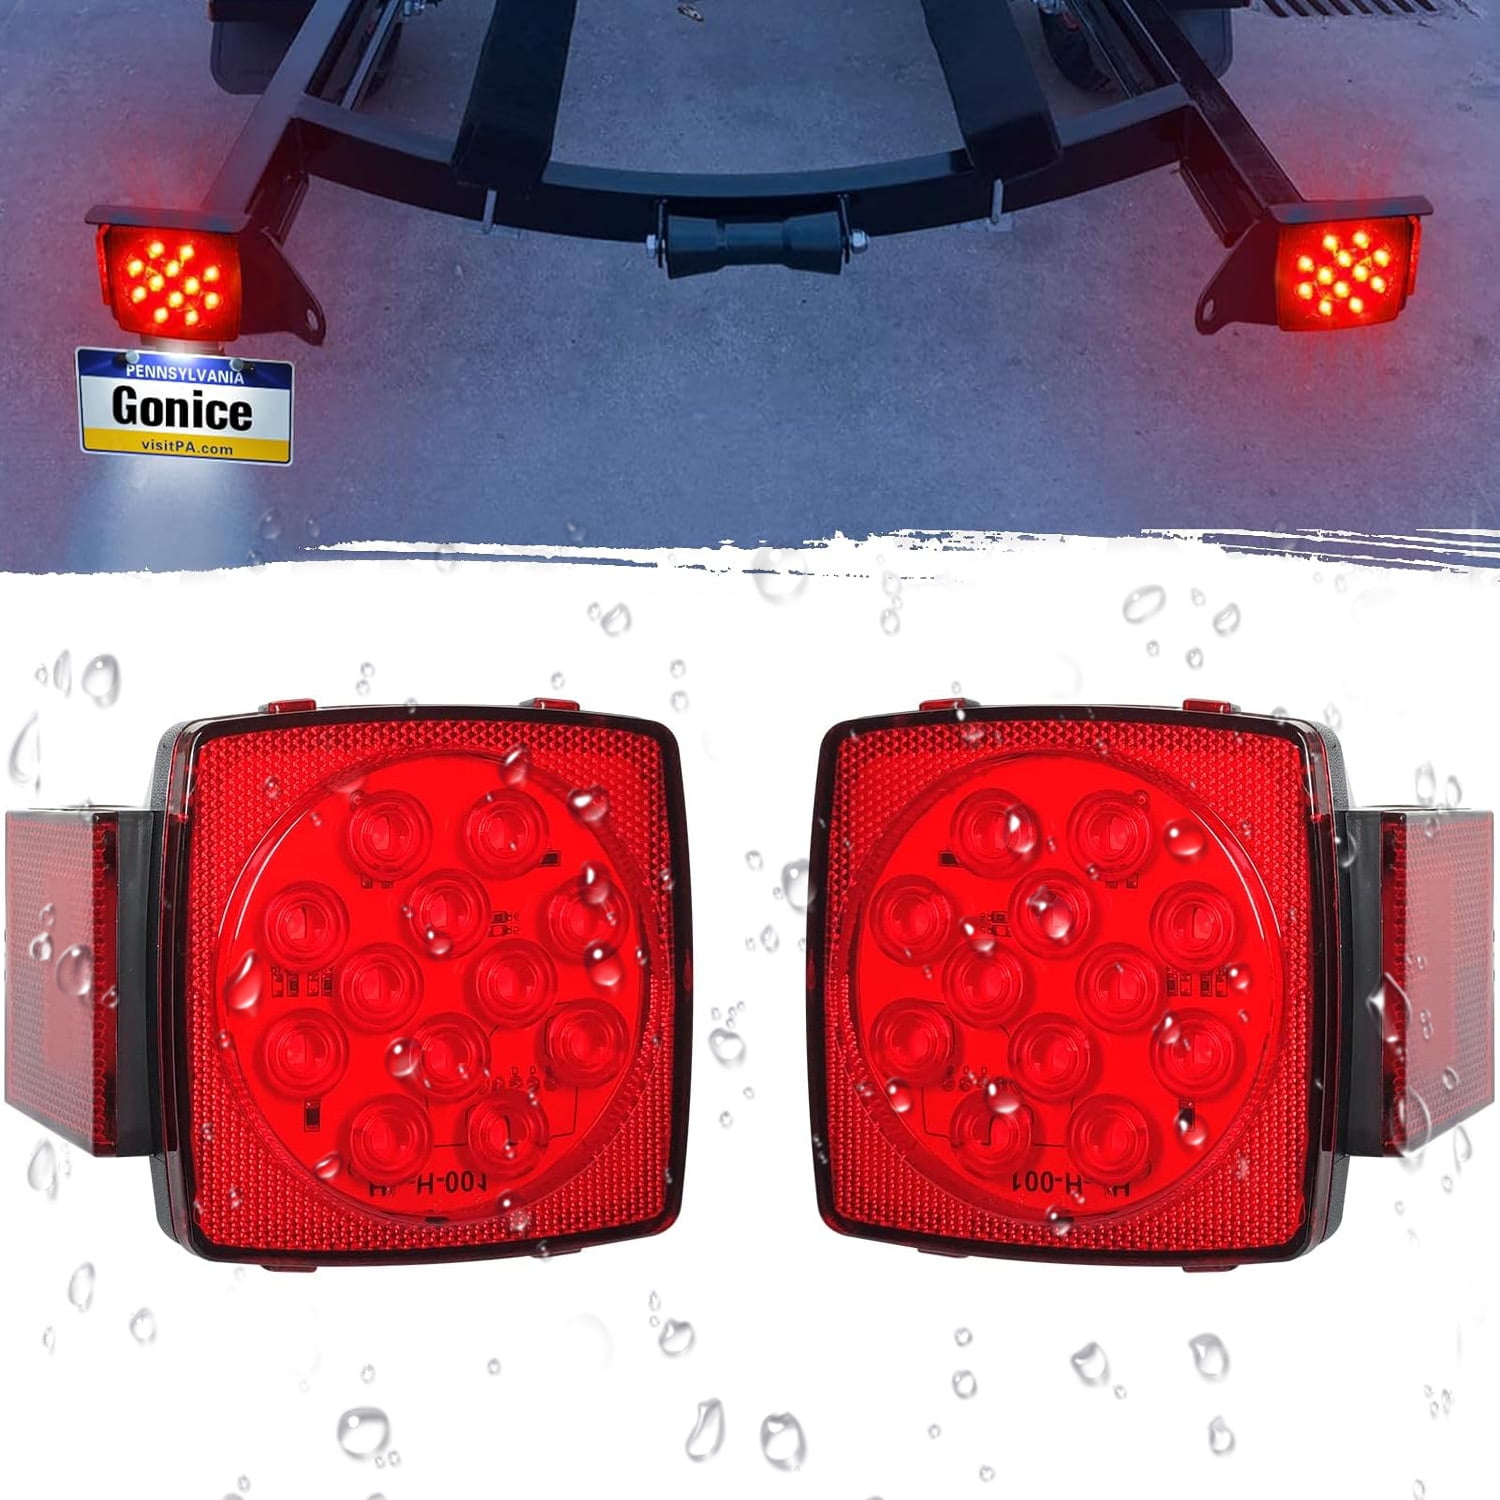 LED Trailer Lights Kit, 12V Submersible Square Led Trailer Light